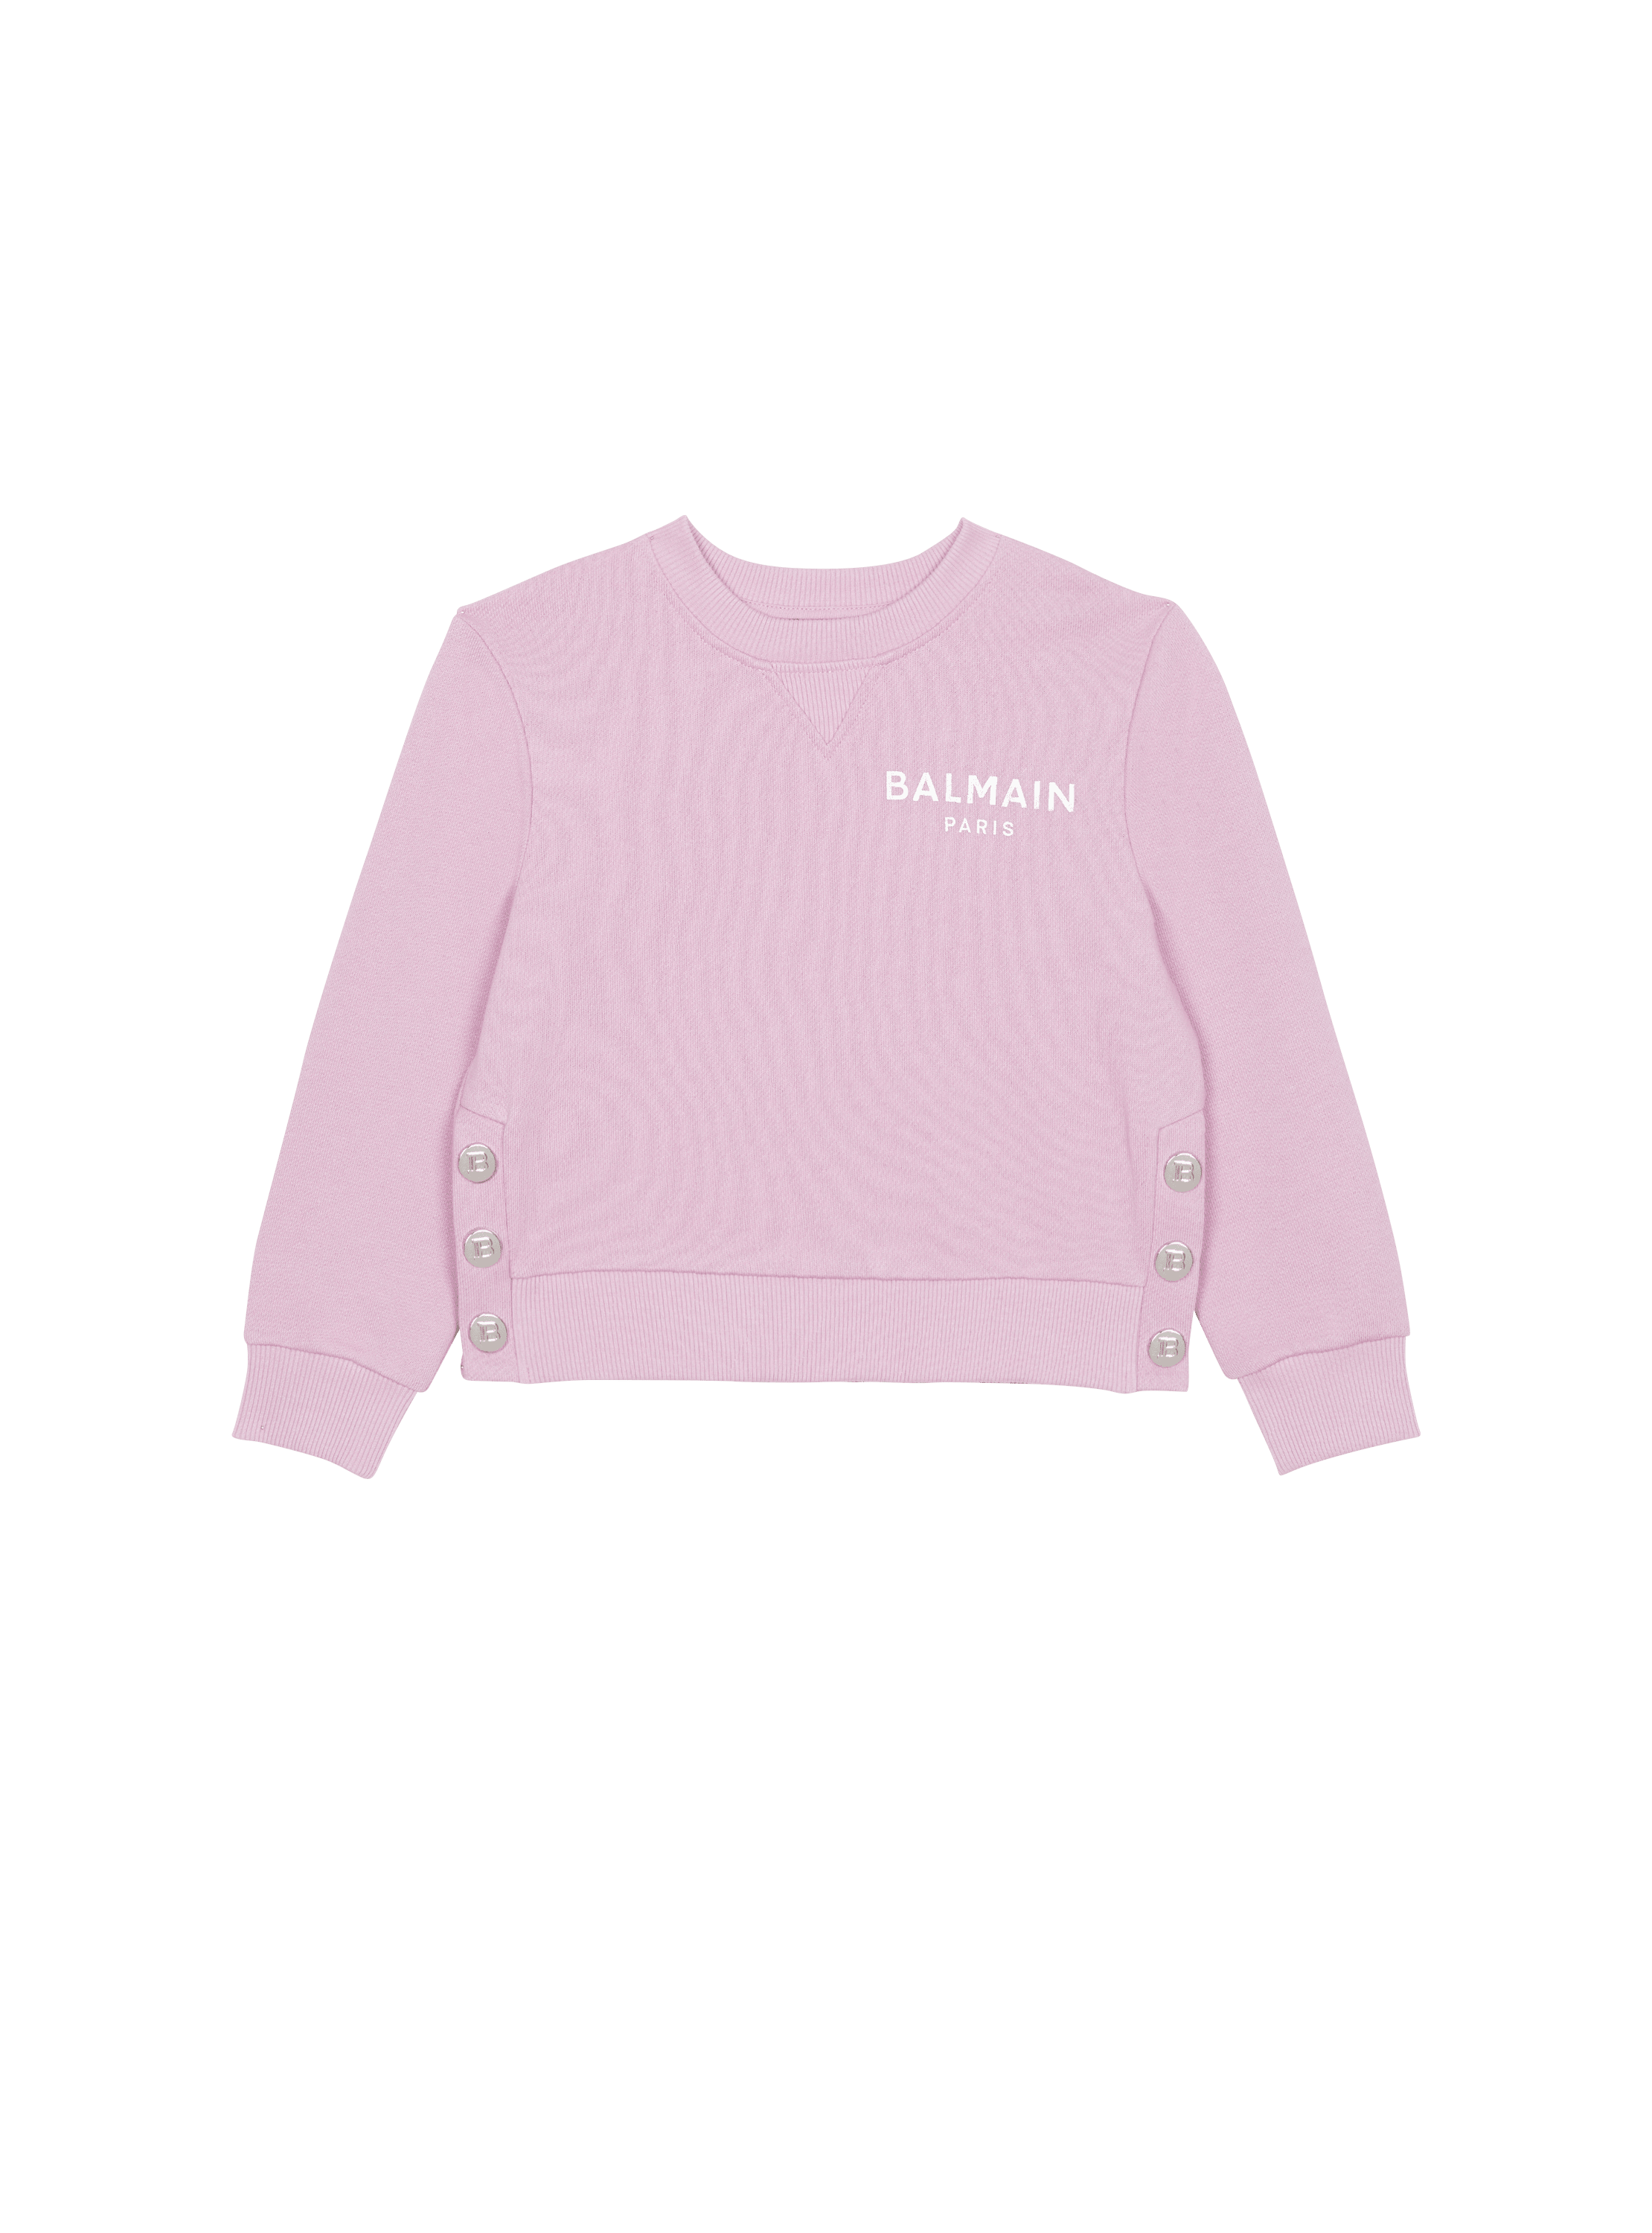 Balmain Paris sweatshirt - Women & Men | BALMAIN